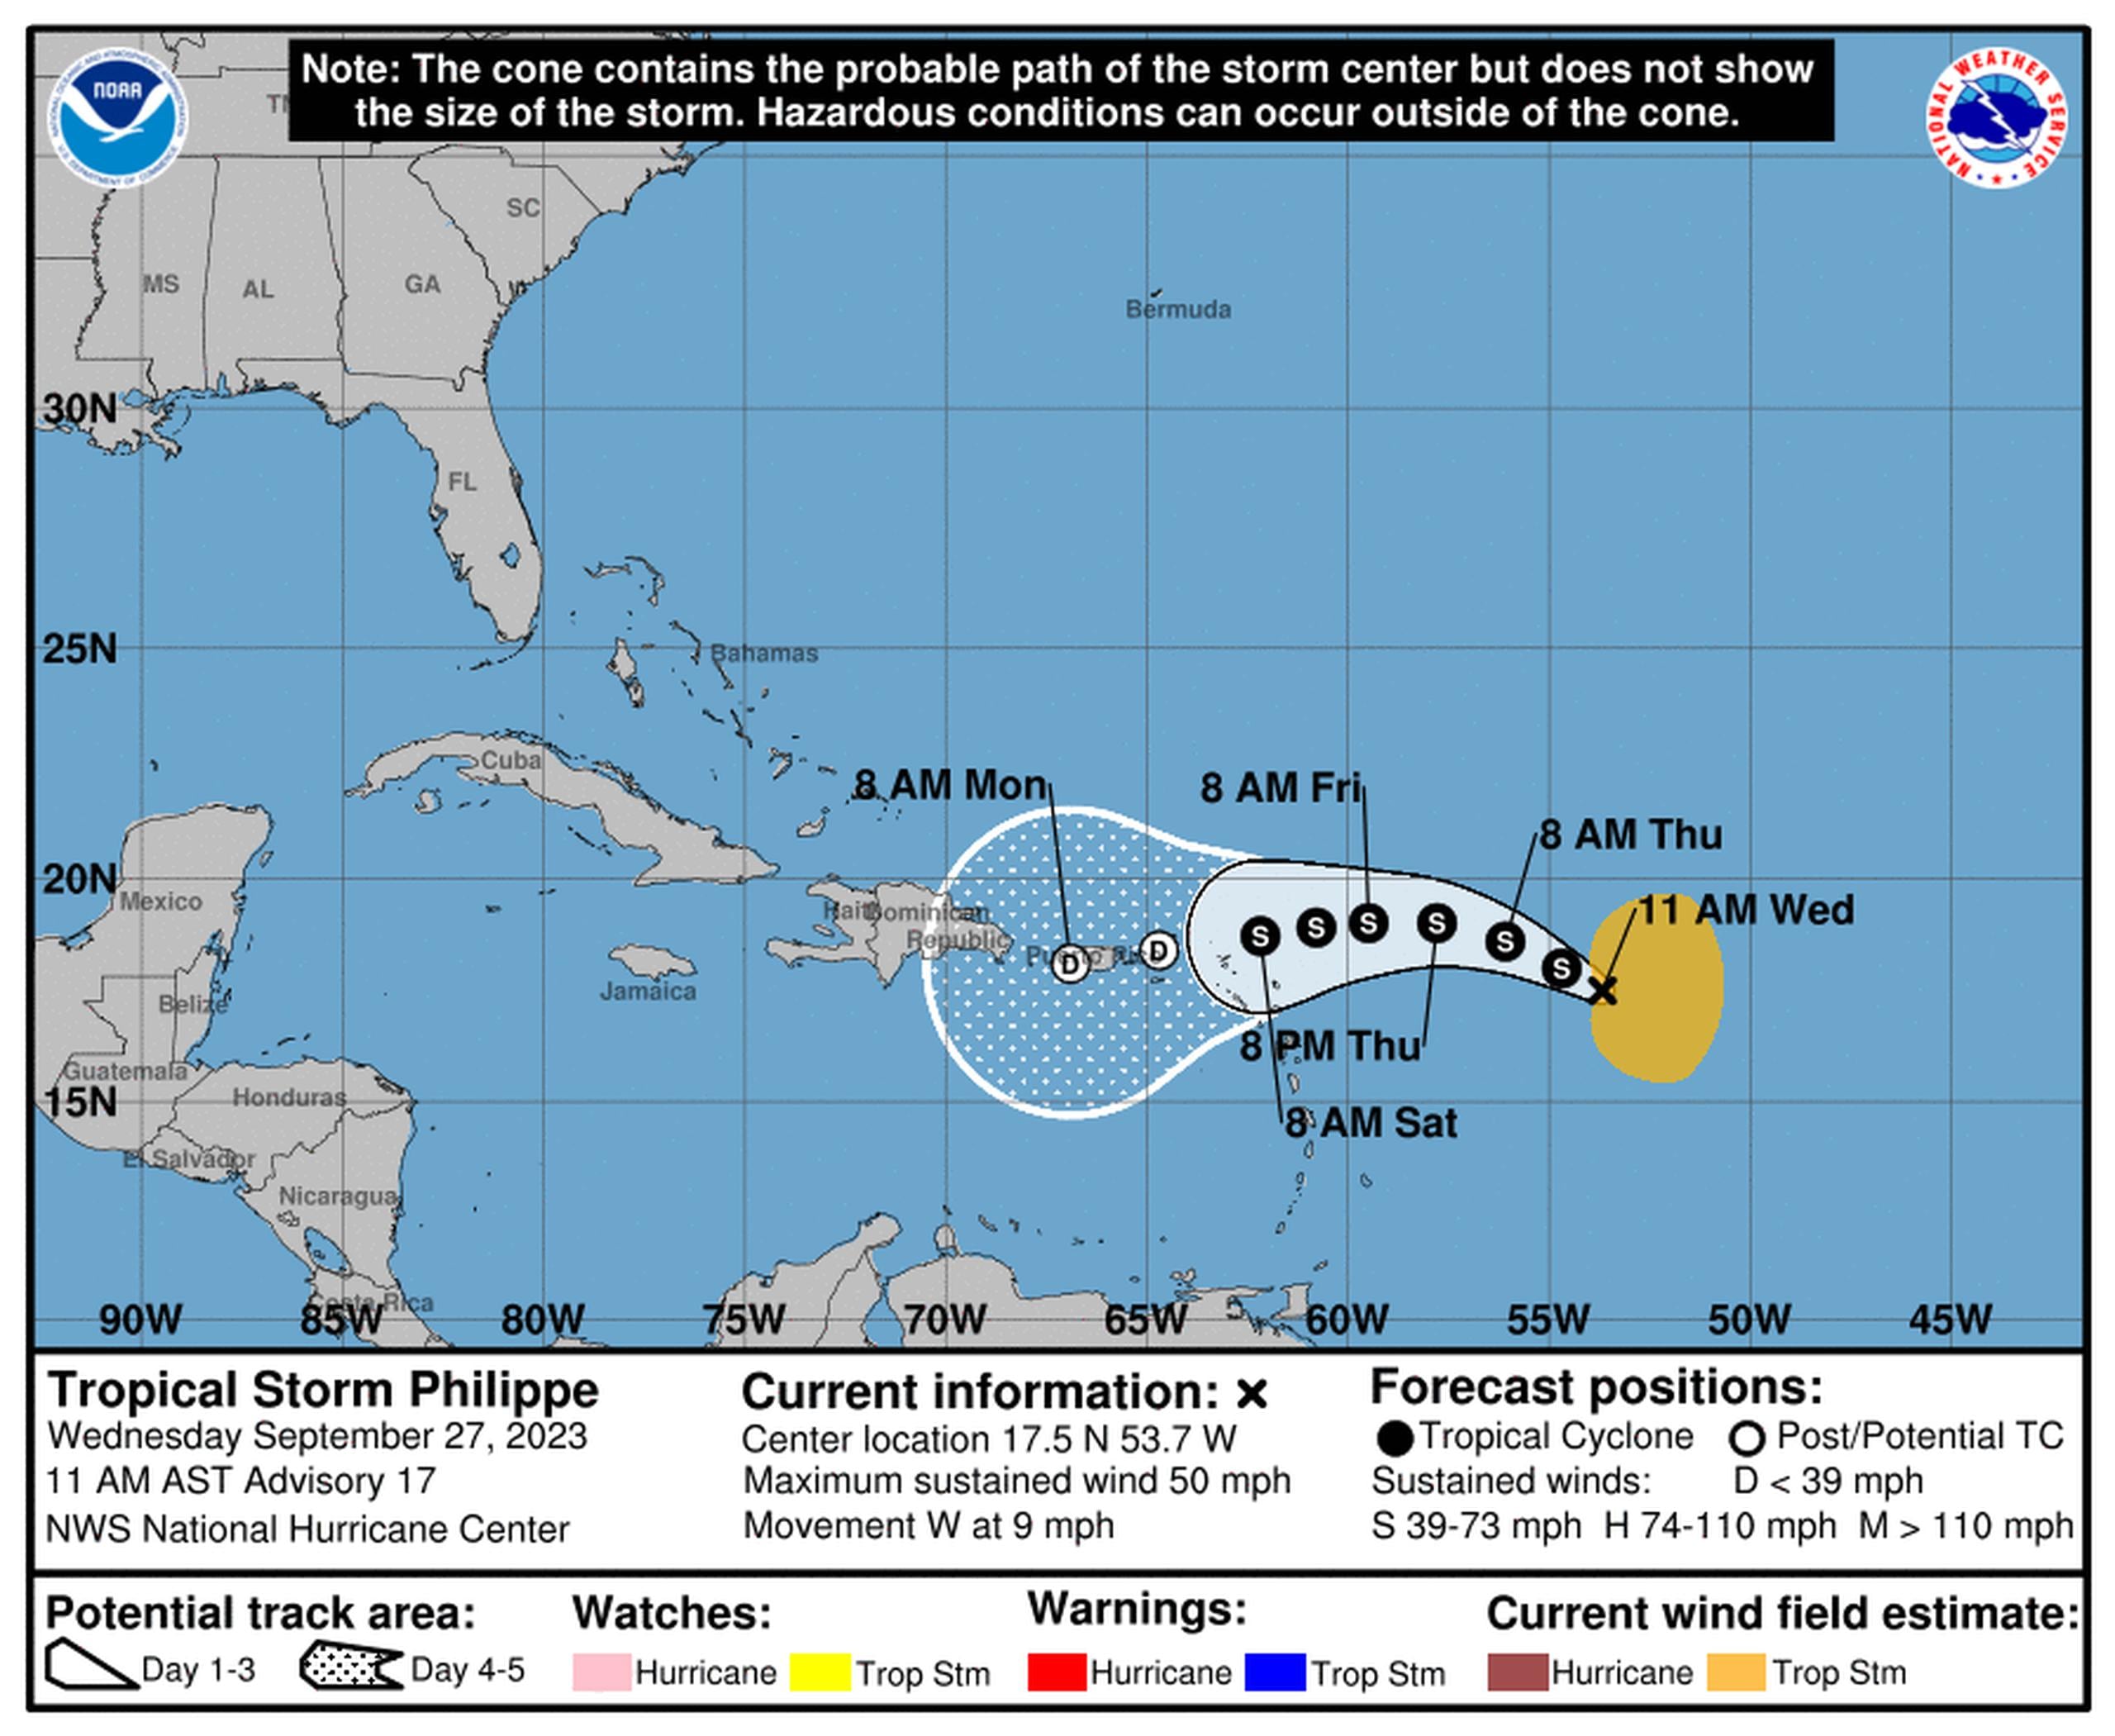 Pronóstico de la tormenta tropical Philippe emitido a las 11:00 de la mañana del 27 de septiembre de 2023.